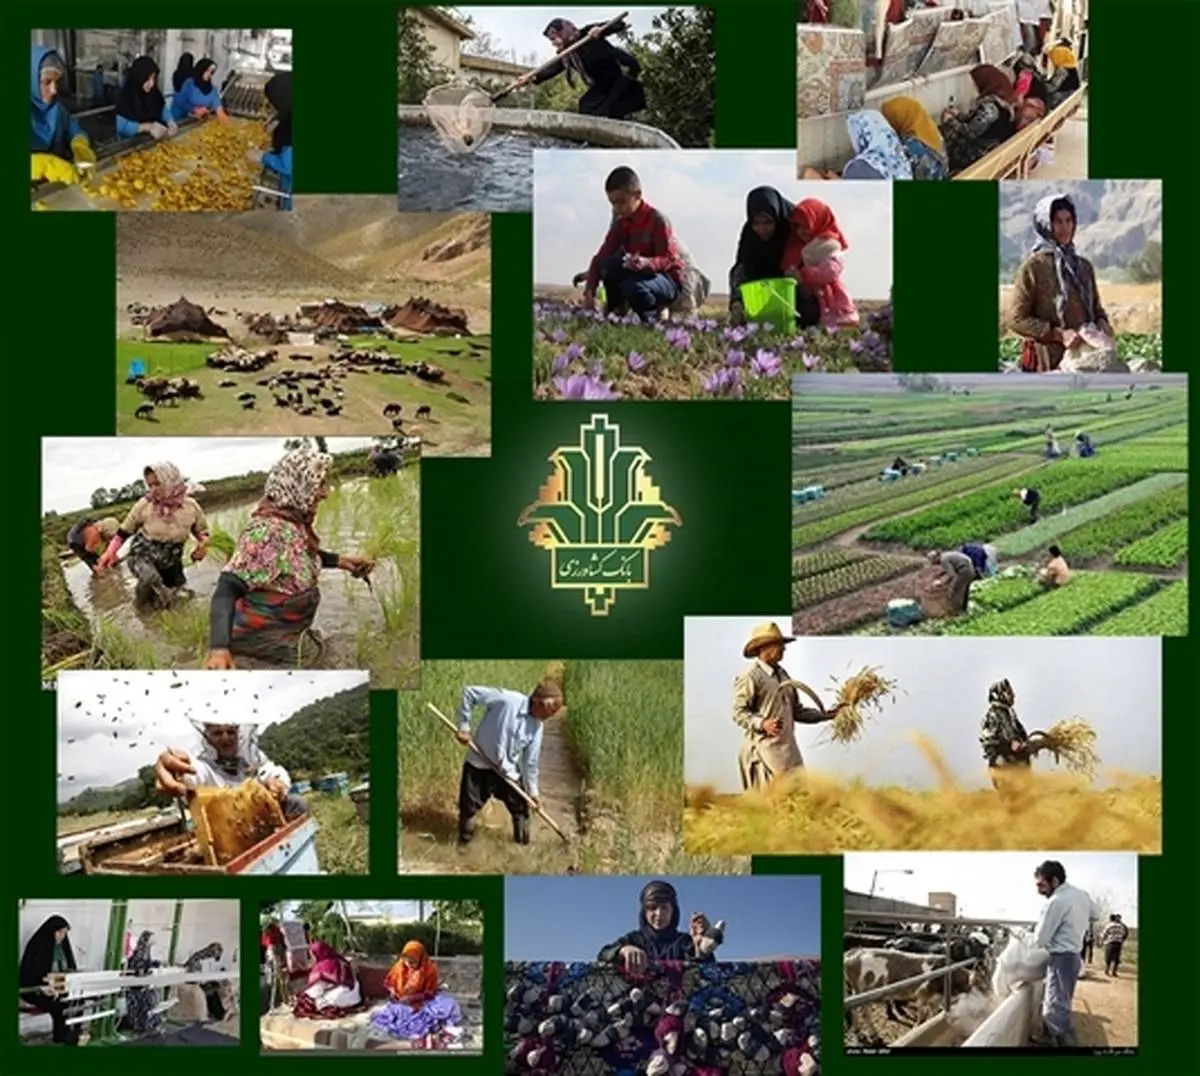 ایجاد بیش از 1500 شغل جدید با حمایت بانک کشاورزی استان بوشهر 